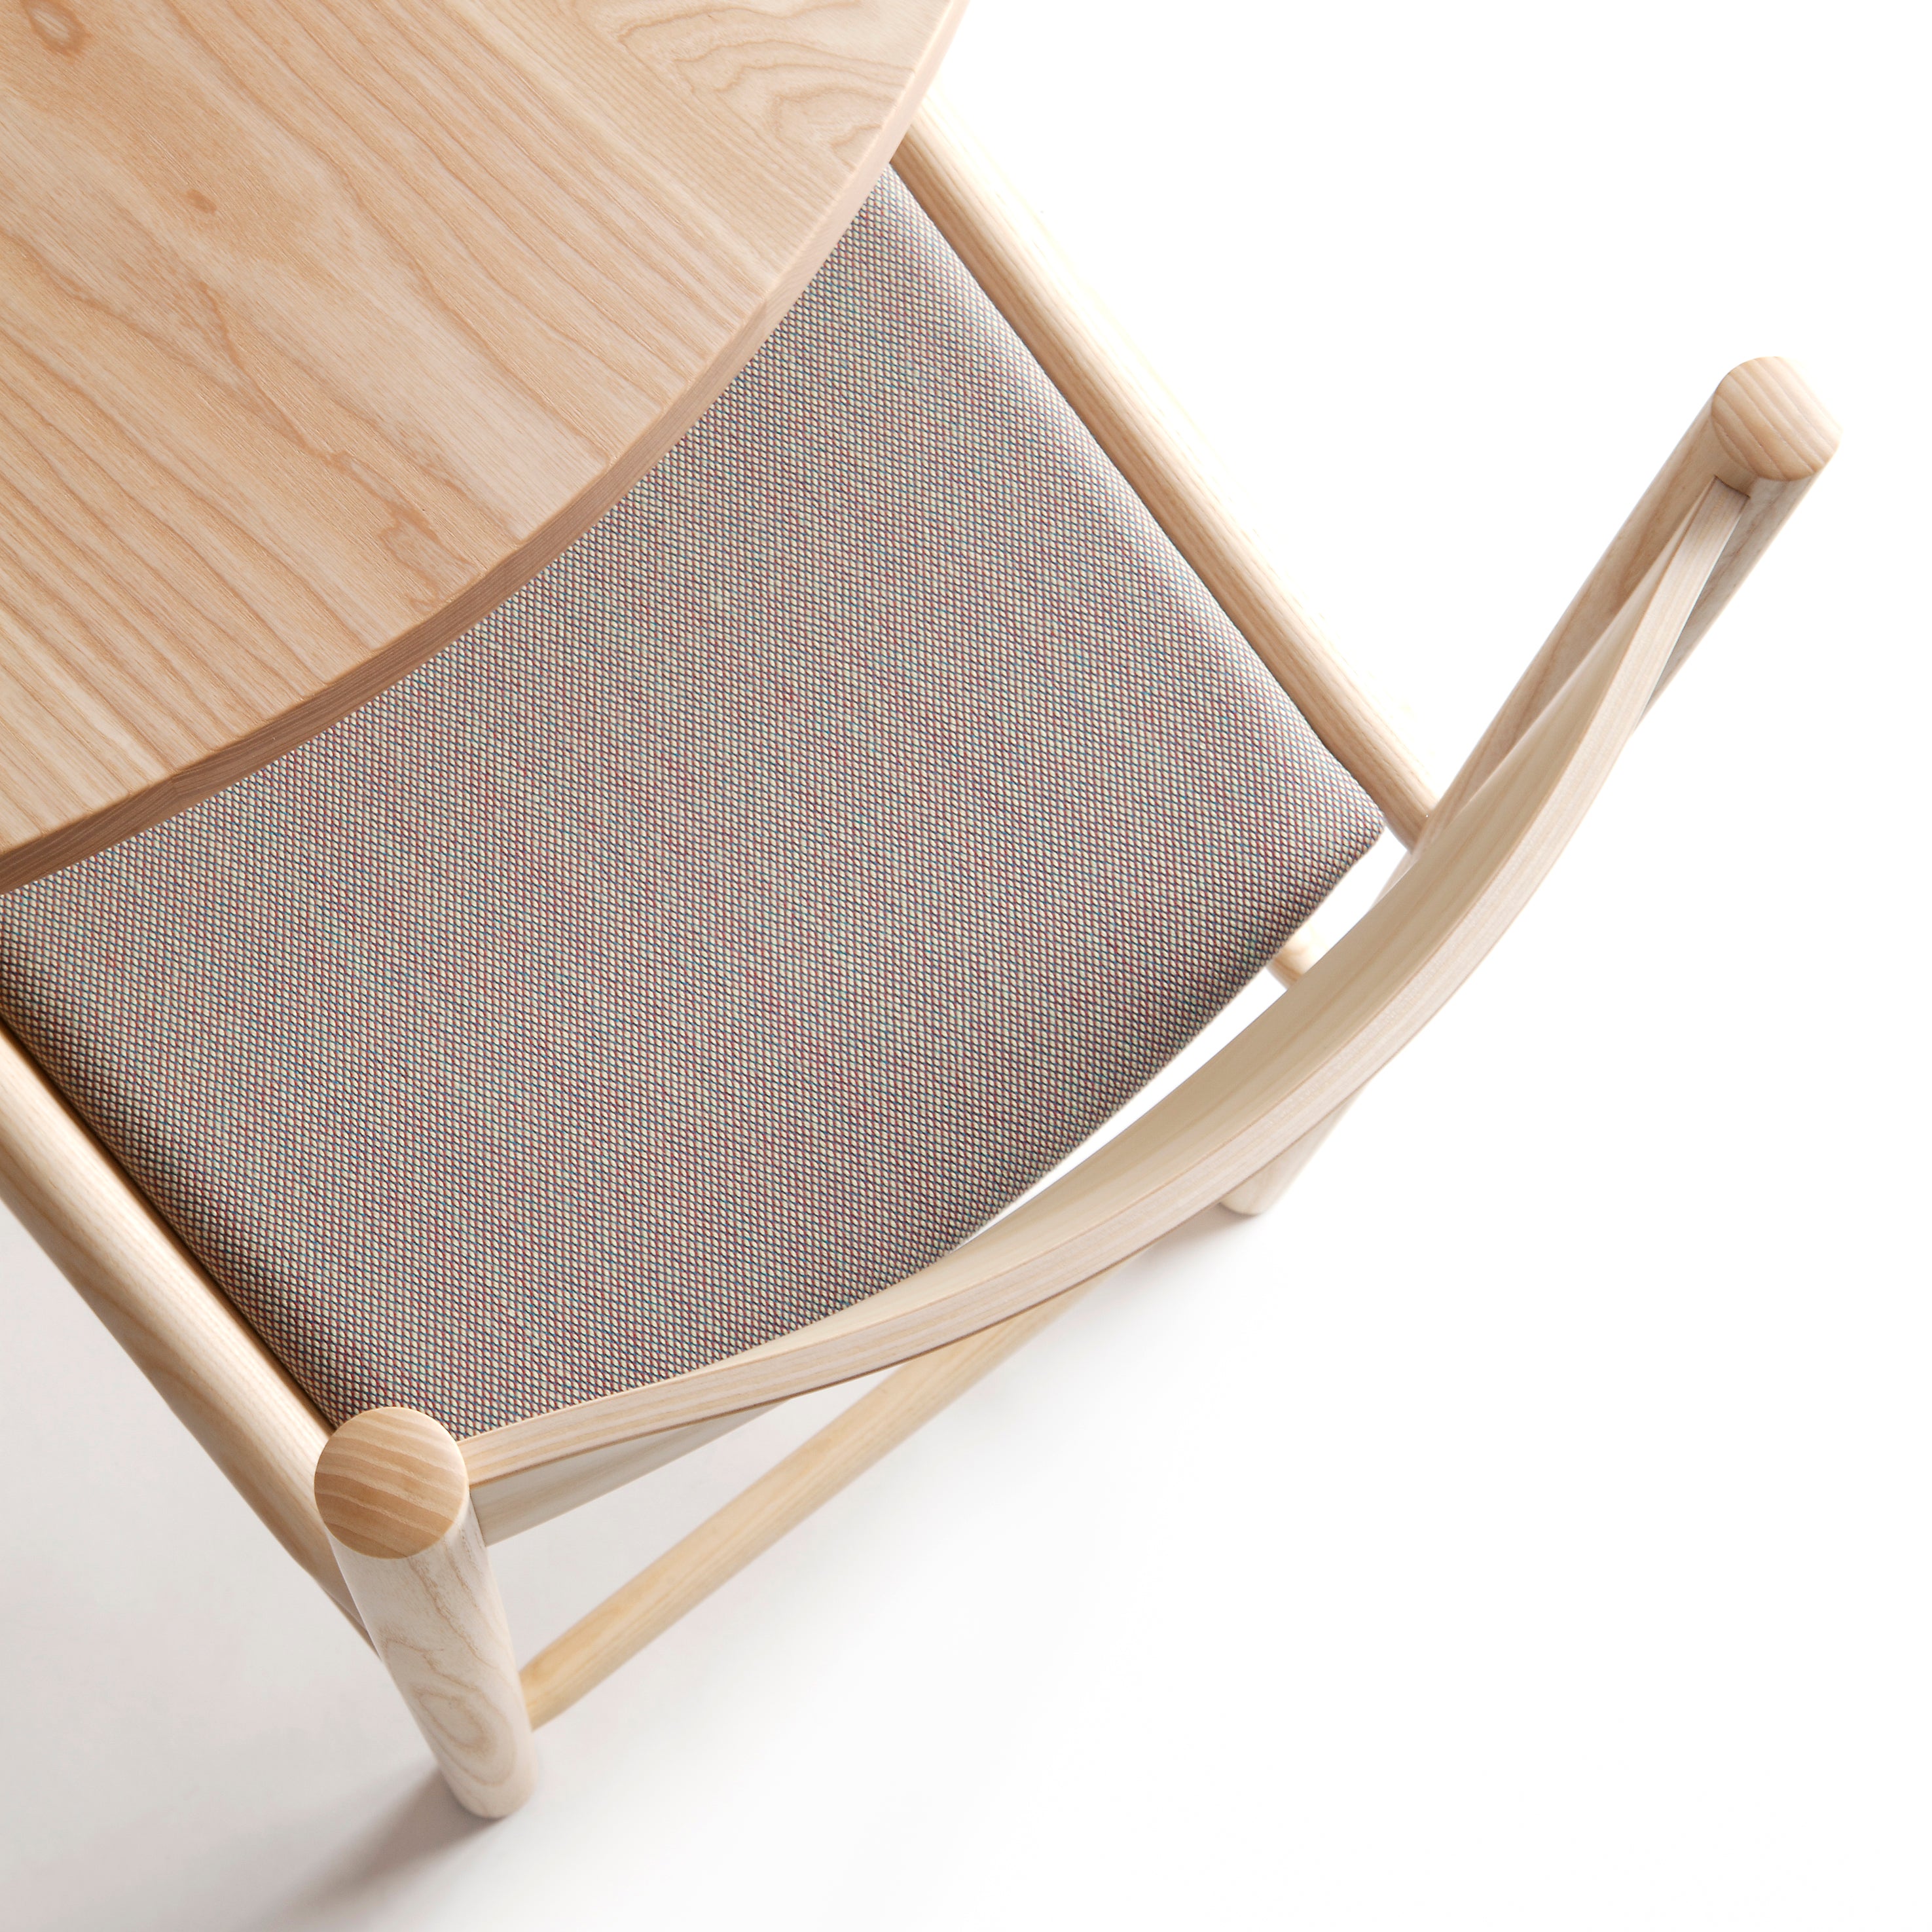 Akademia Chair: Upholstered